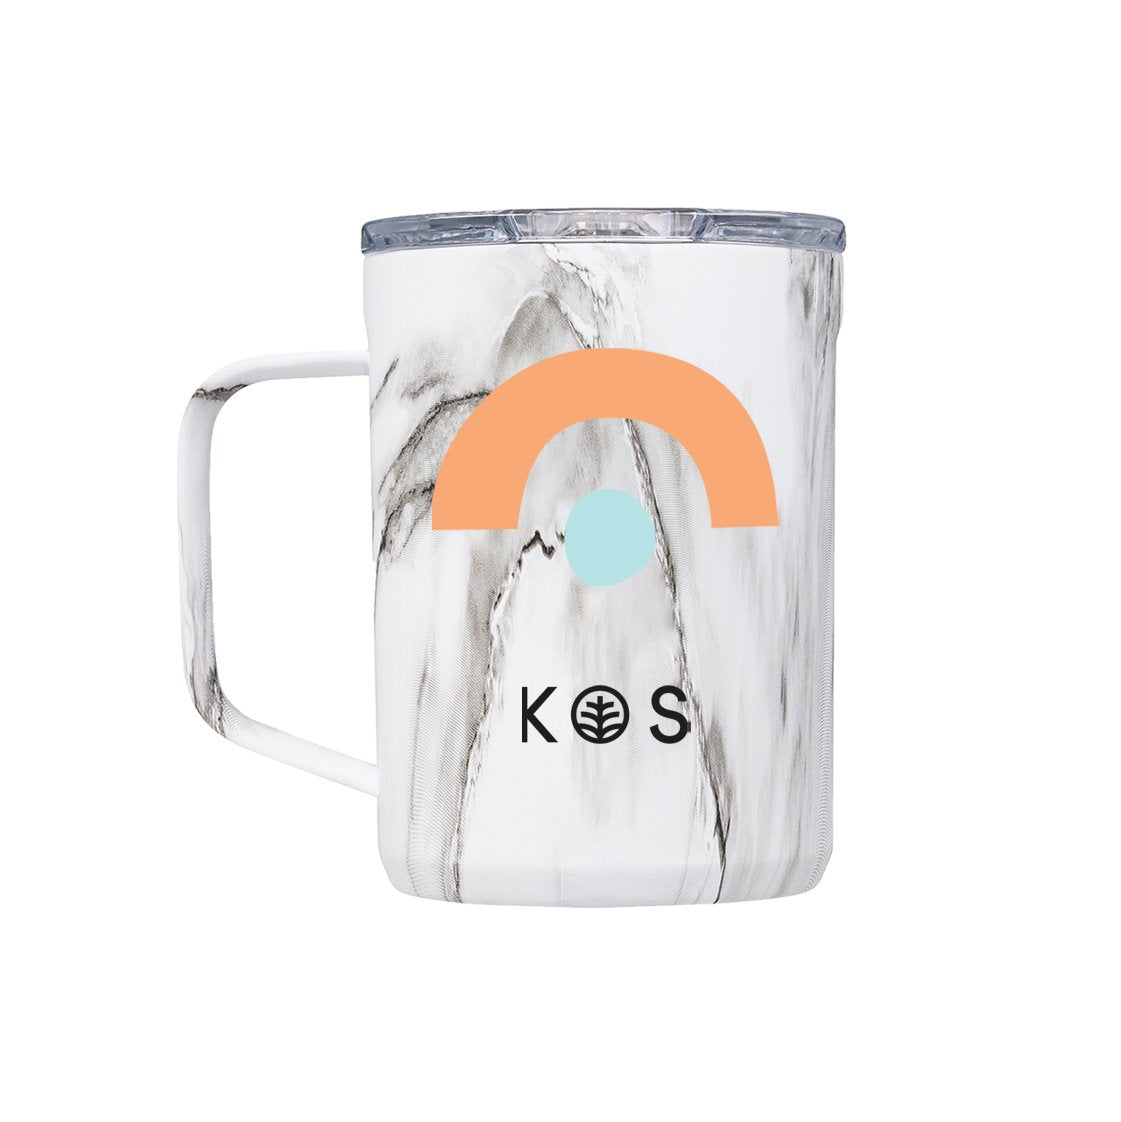 KOS + CORKCICLE Coffee Mug | Green Coeus